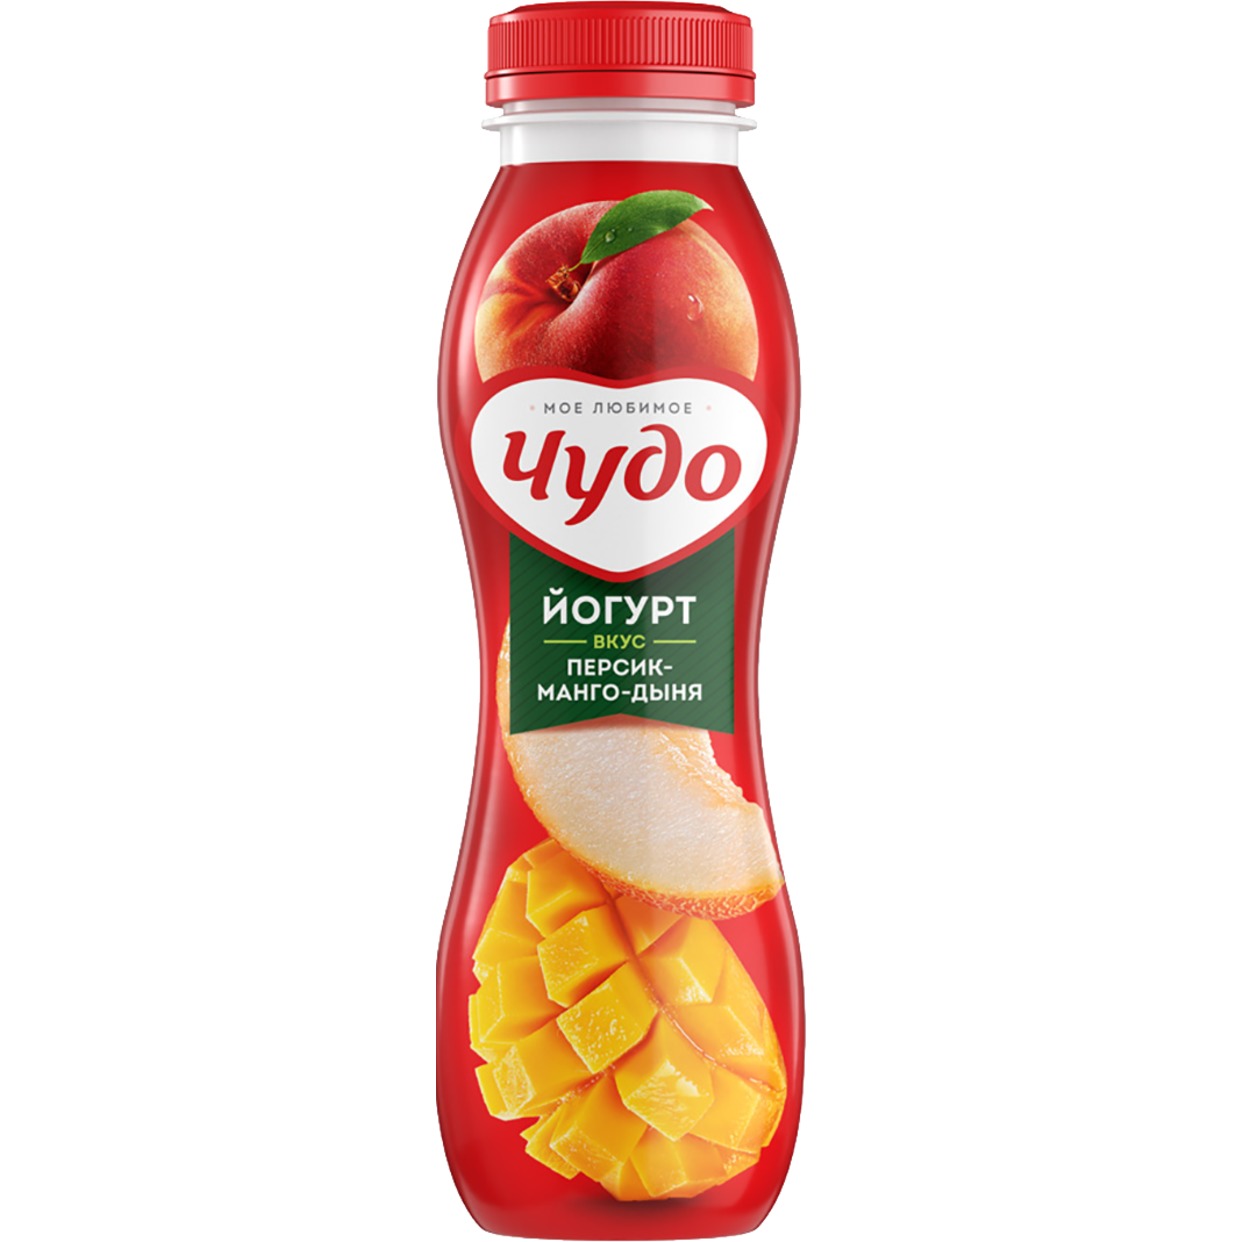 Йогурт Чудо питьевой со вкусом персика, манго и дыни 2,4% 270г